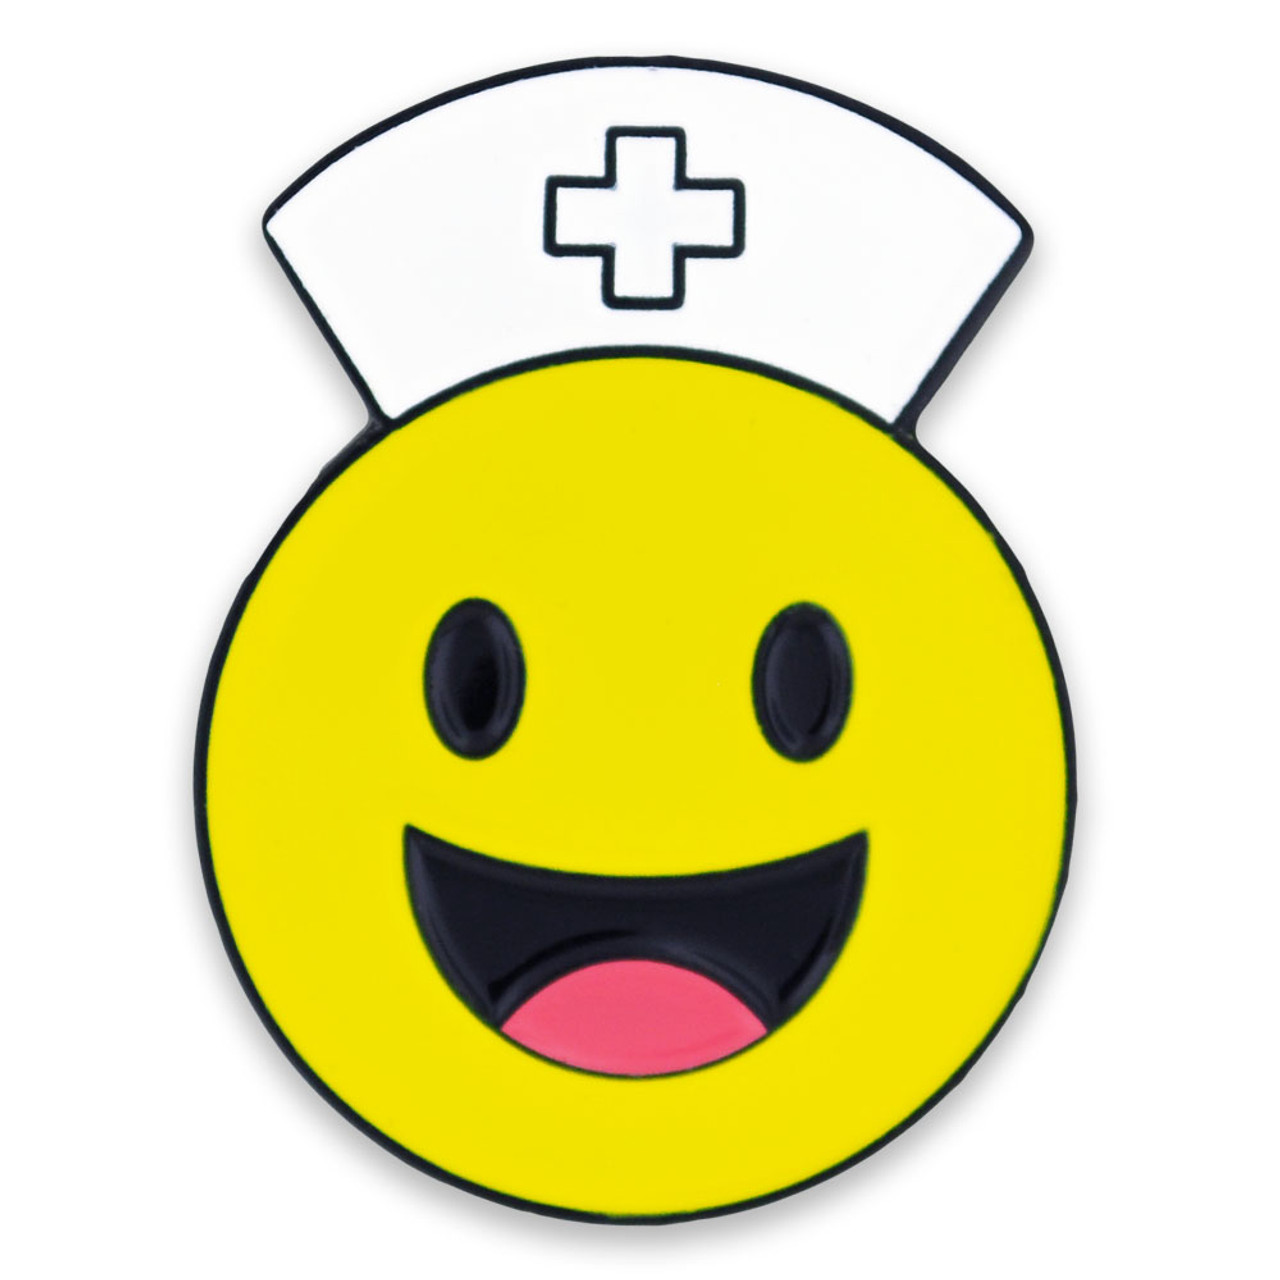 Smiley Face Nurse Pin | PinMart